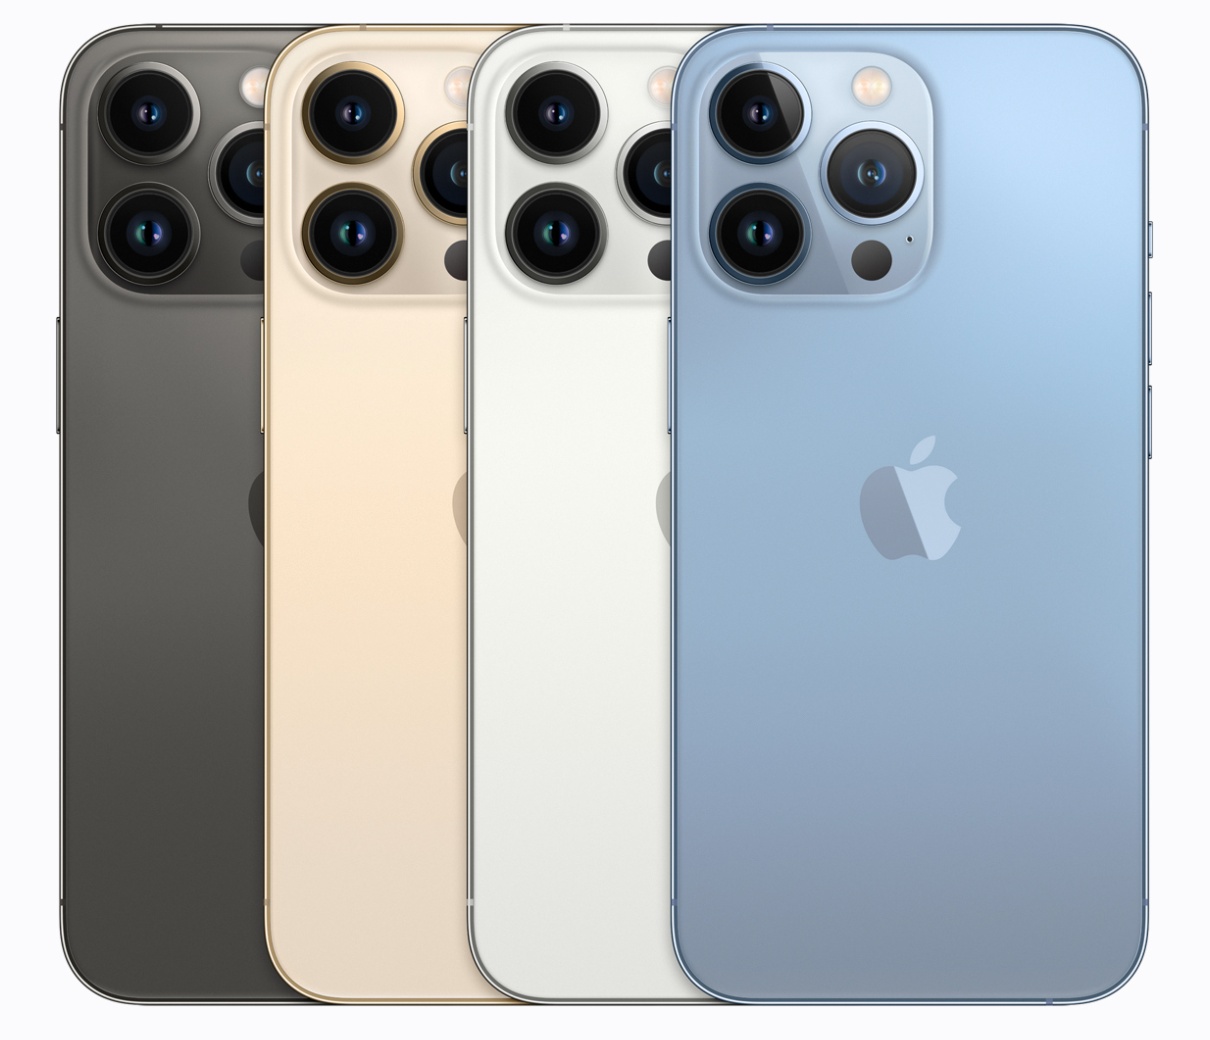 iPhone 14 比較 iPhone 13 Pro！同樣搭載 A15 仿生晶片，買 iPhone 13 Pro 更超值？